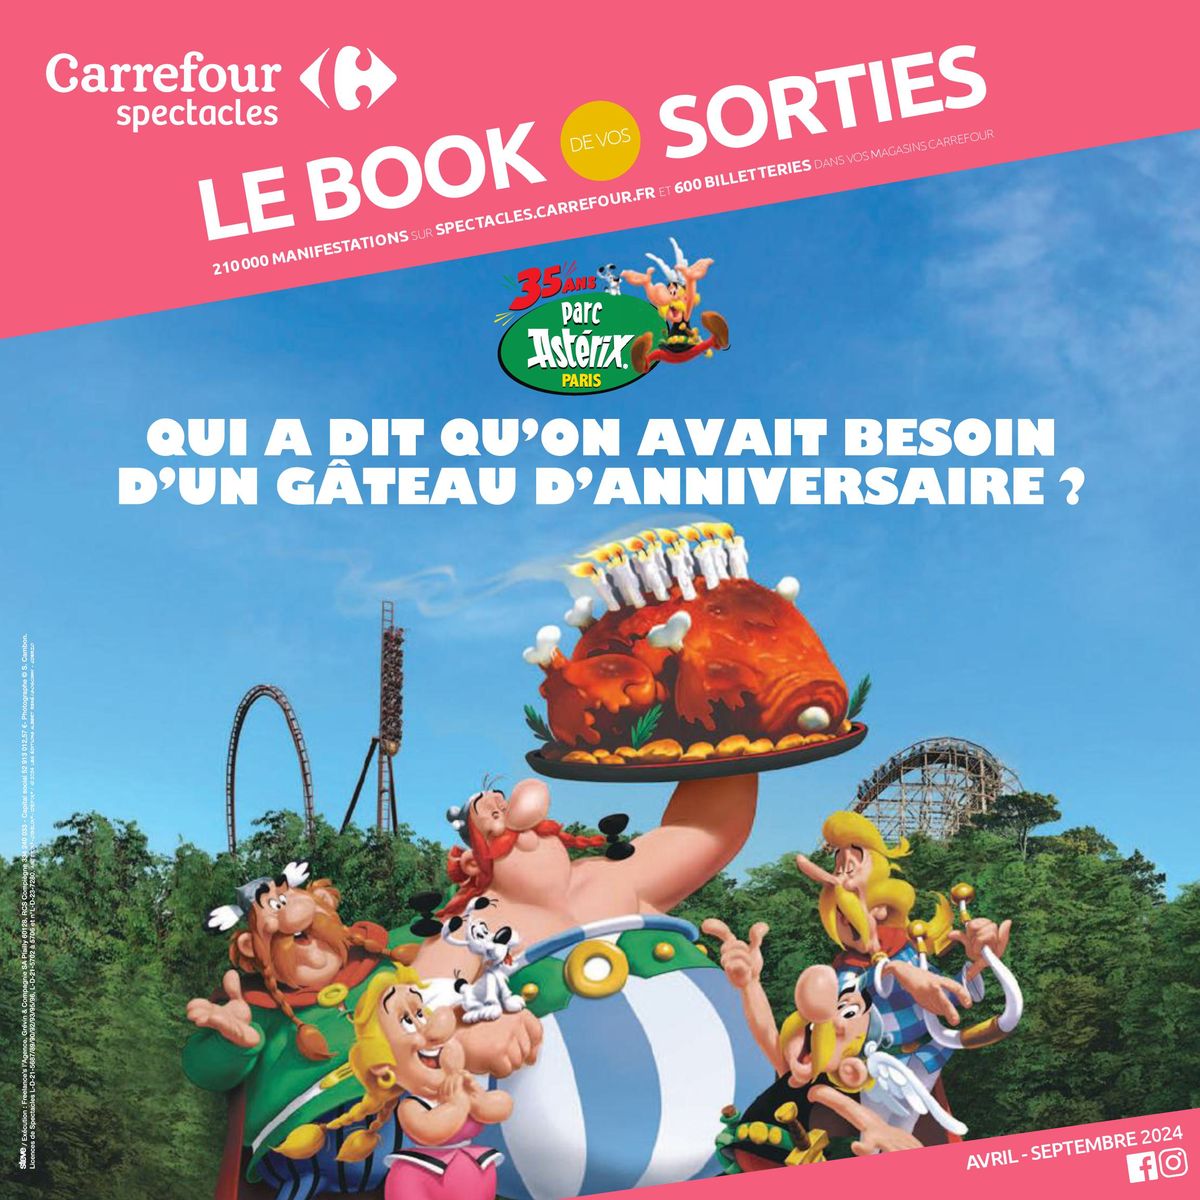 Catalogue Carrefour Spectacles - Le Book de vos Sorties, page 00001